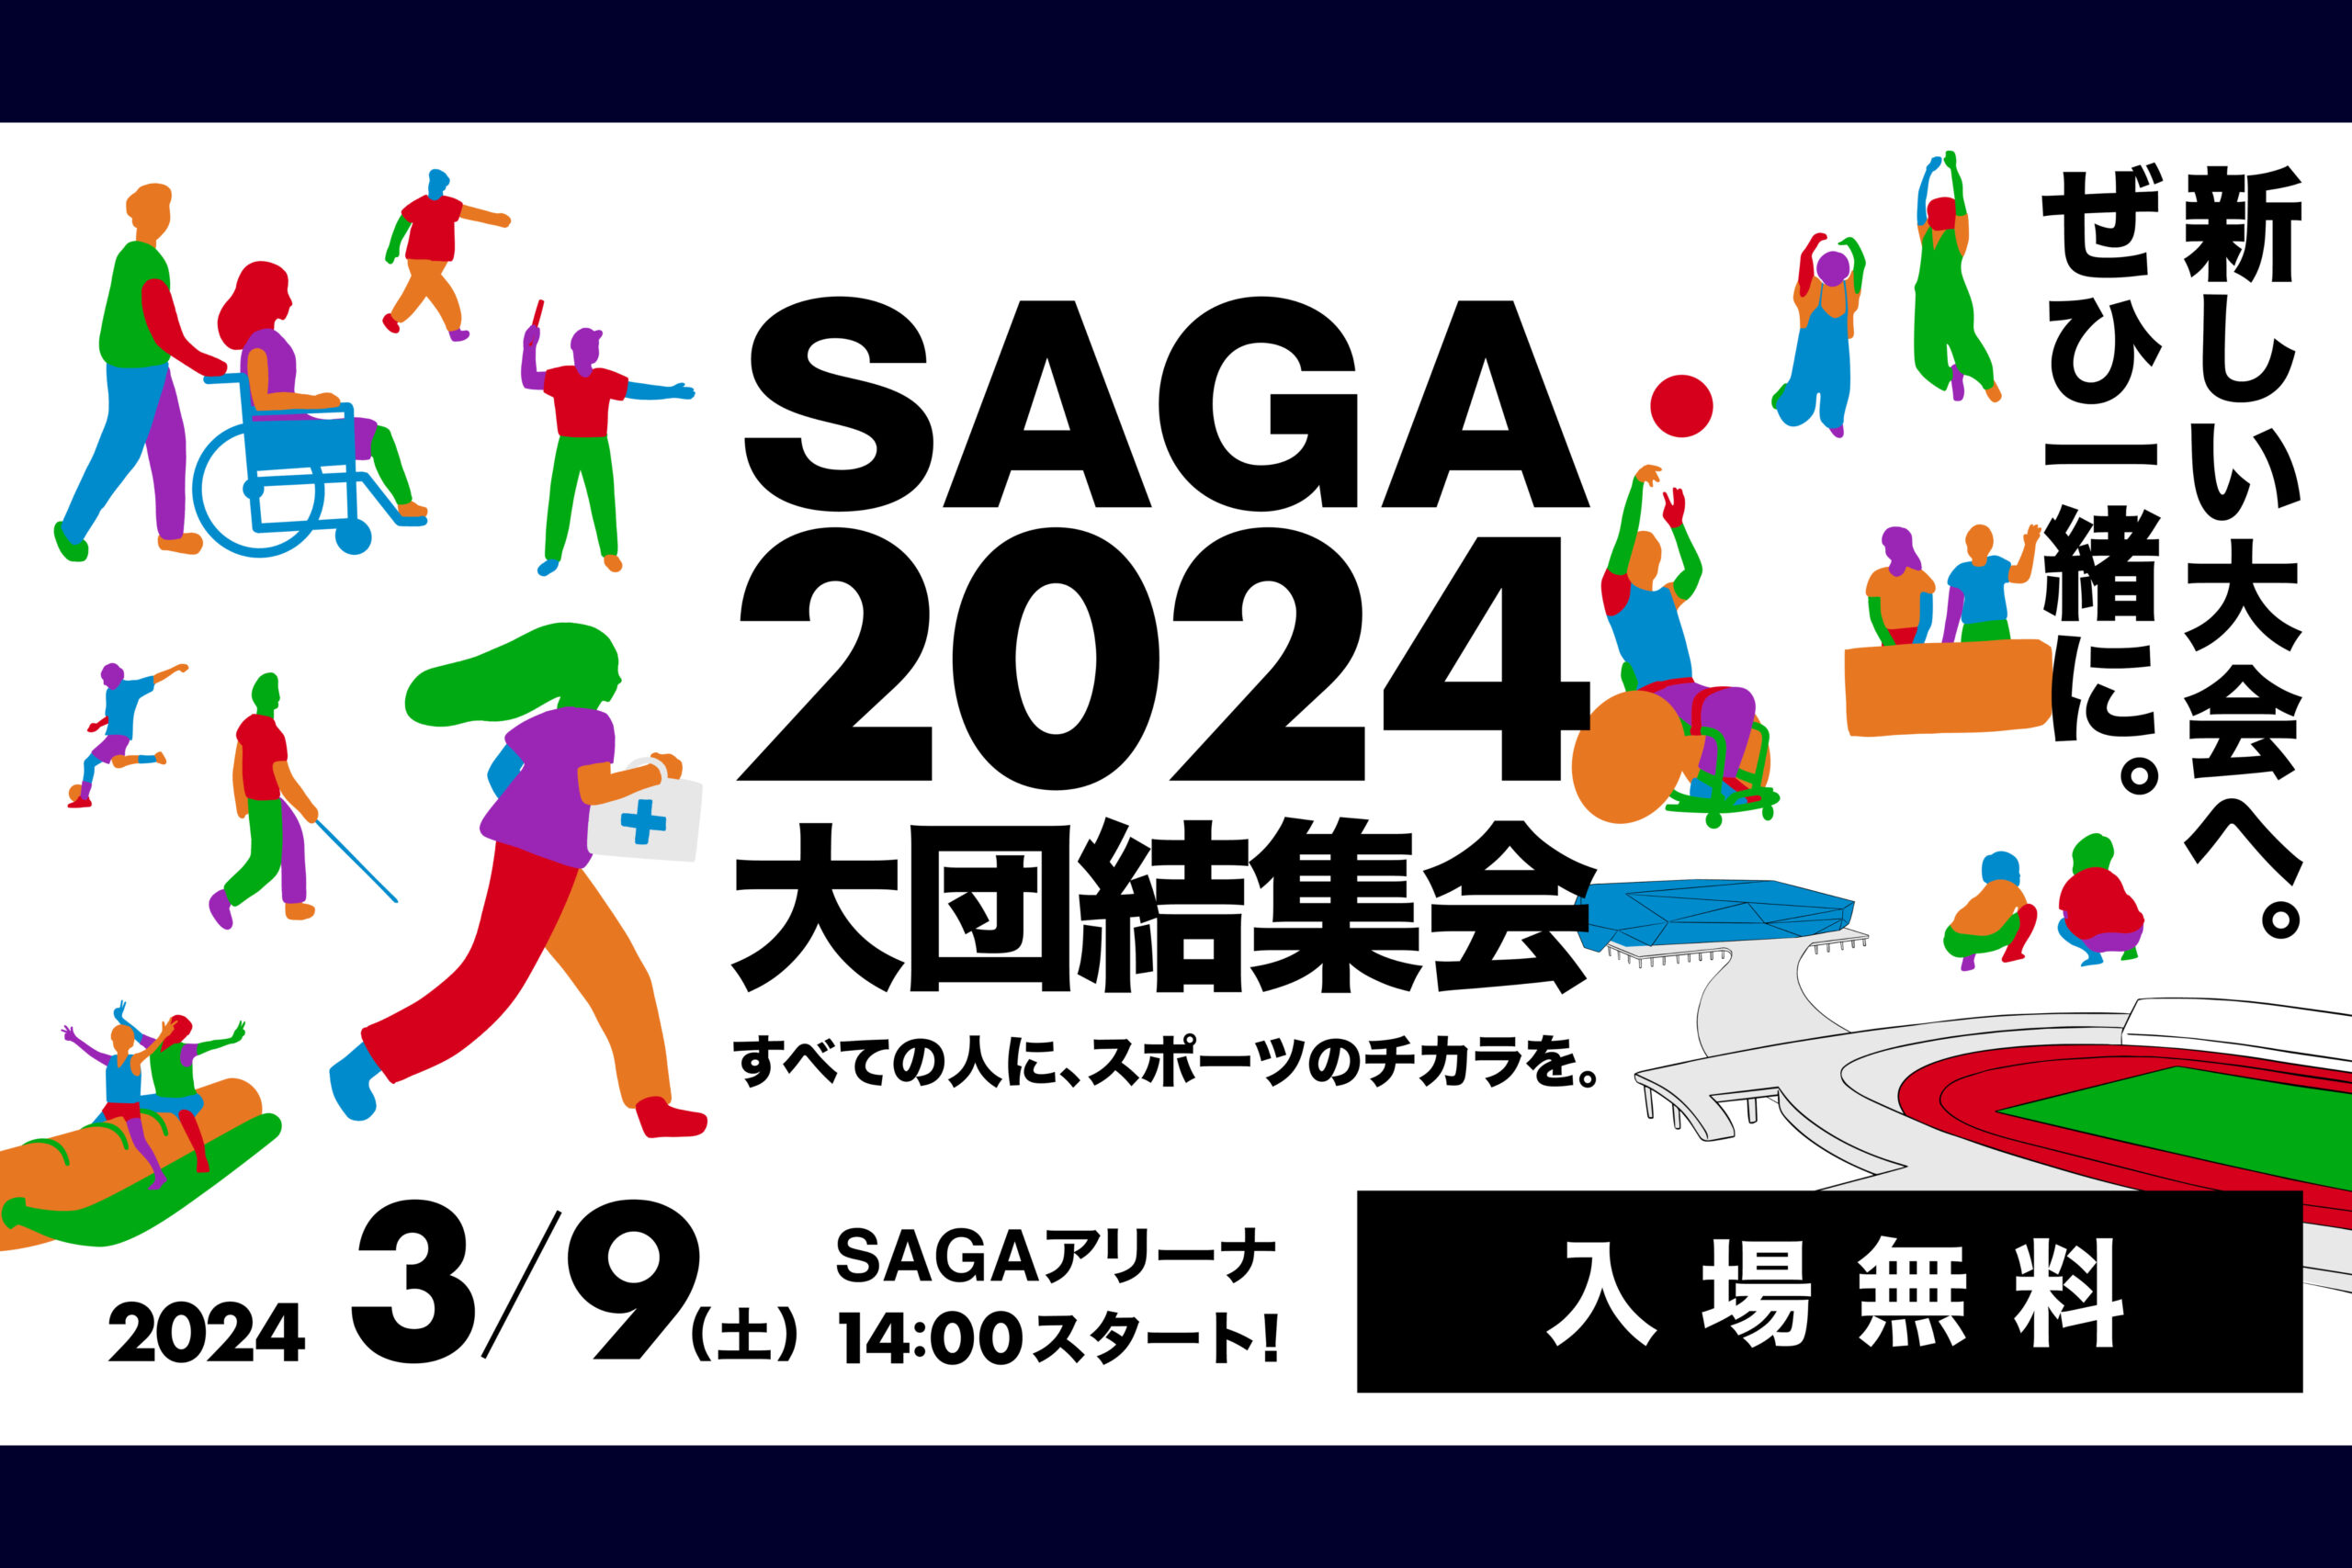 SAGA2024 大団結集会～すべての人に、スポーツのチカラを。～